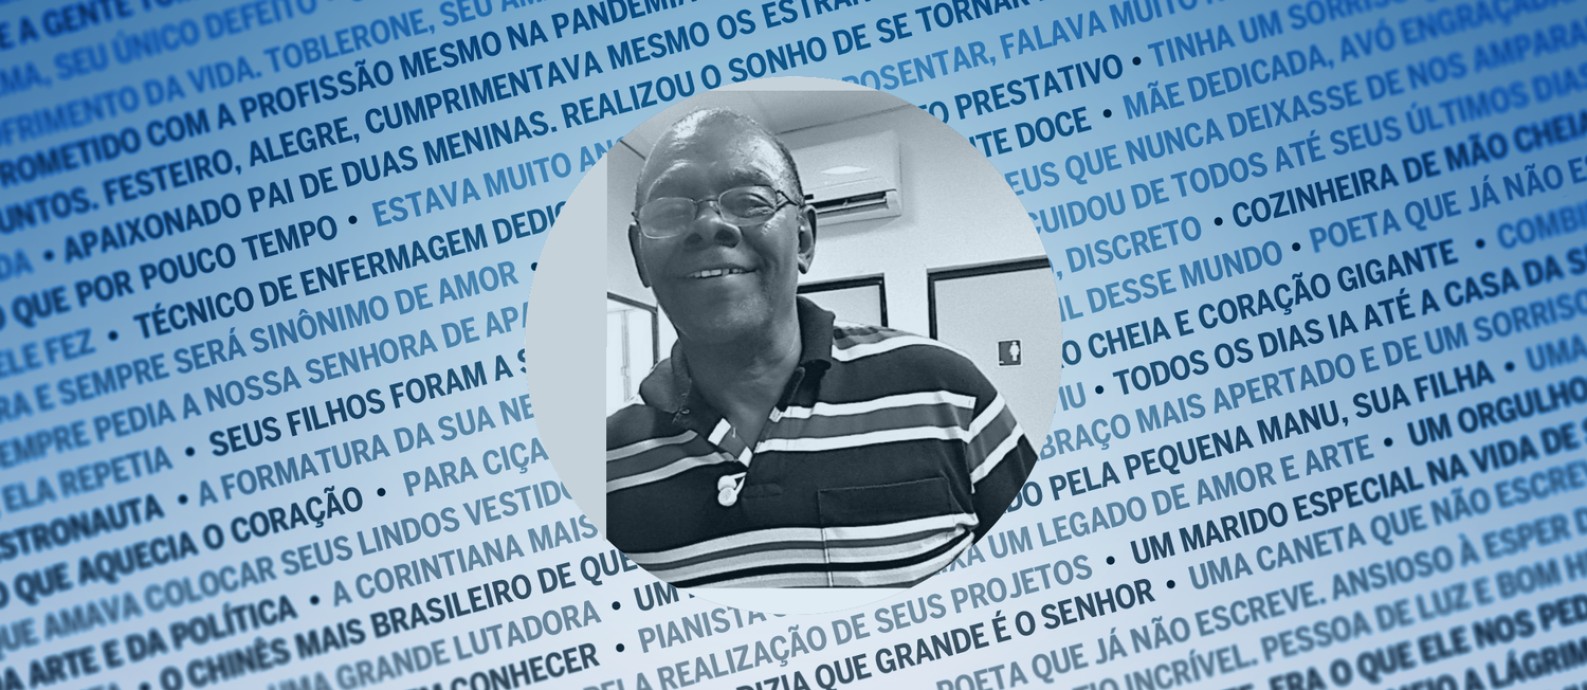 Waldir Alves de Carvalho, de 62 anos, morreu no último sábado, vítima de Covid-19 Foto: Arquivo de família